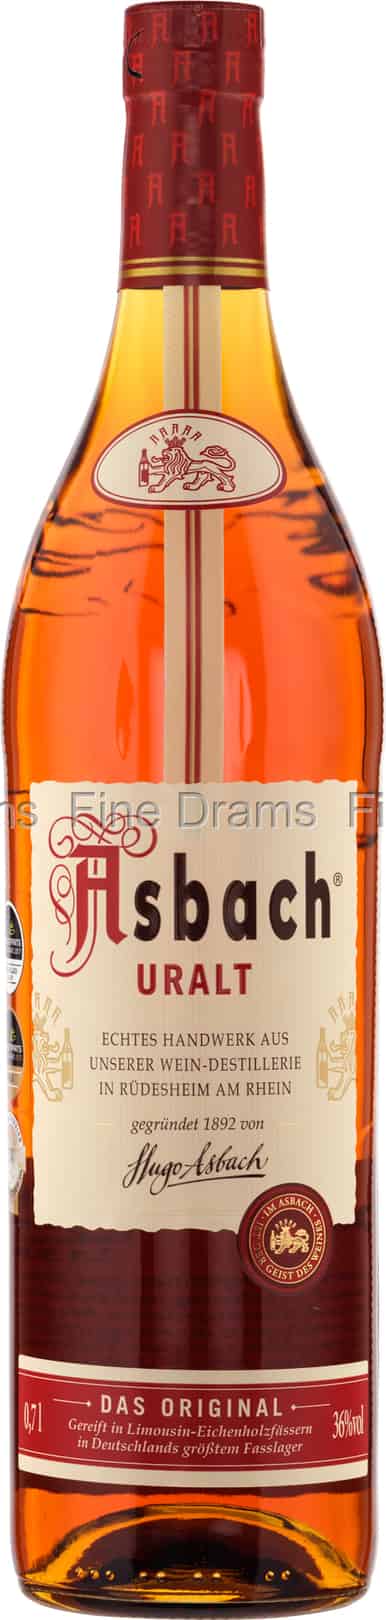 (36%) Asbach Uralt Brandy